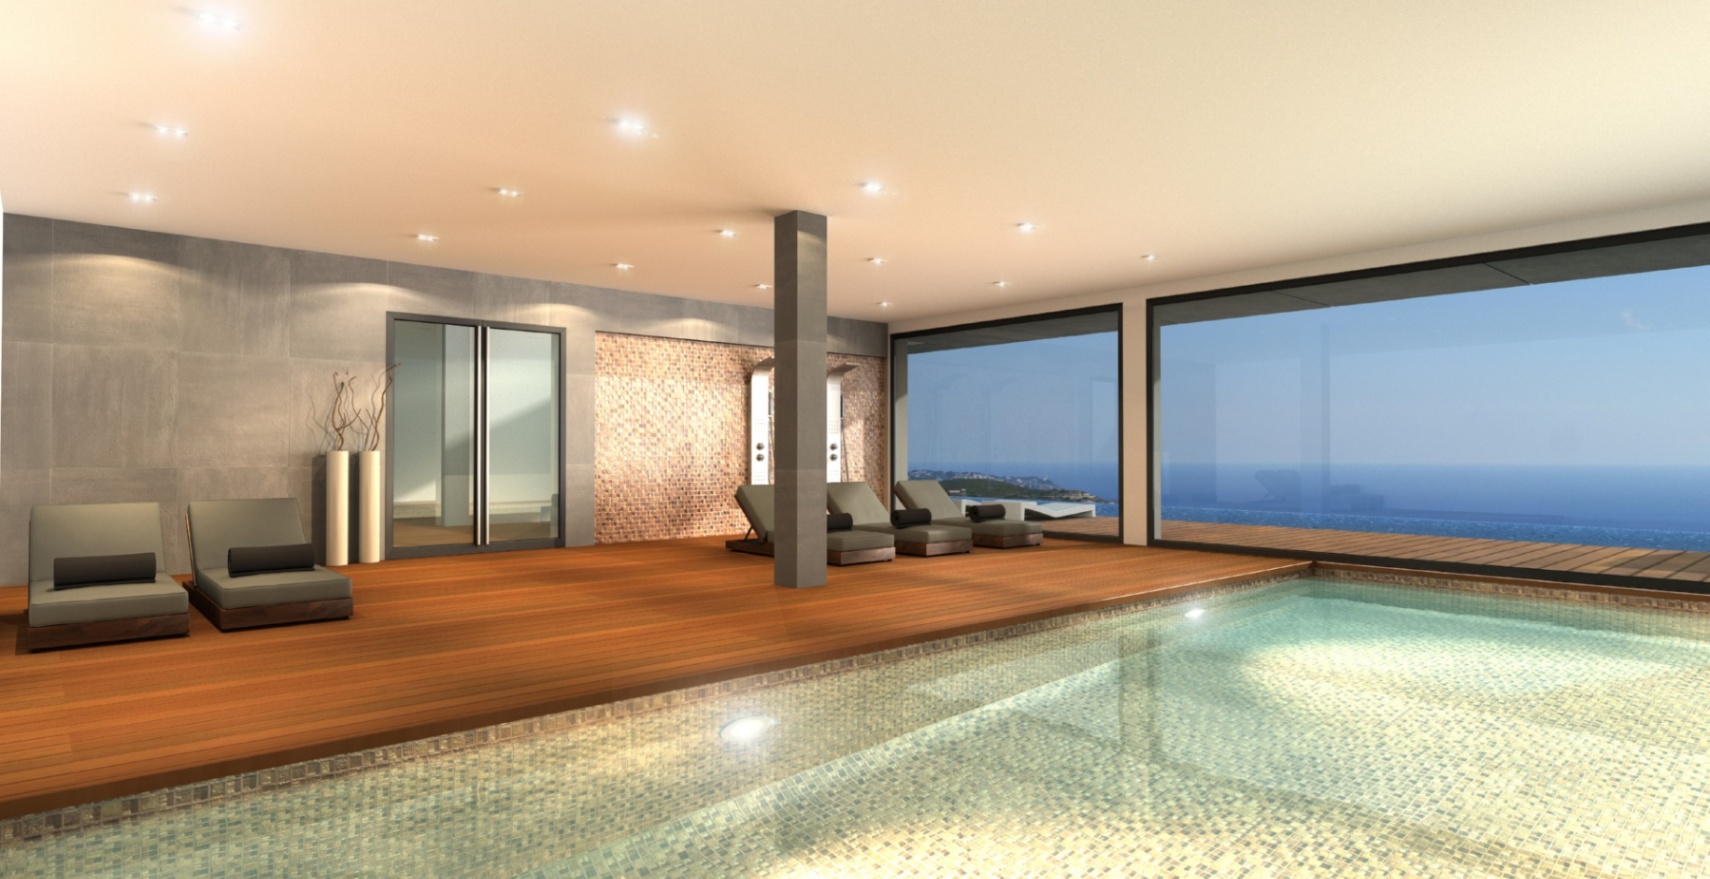 Uniek luxe appartement met adembenemend uitzicht op zee